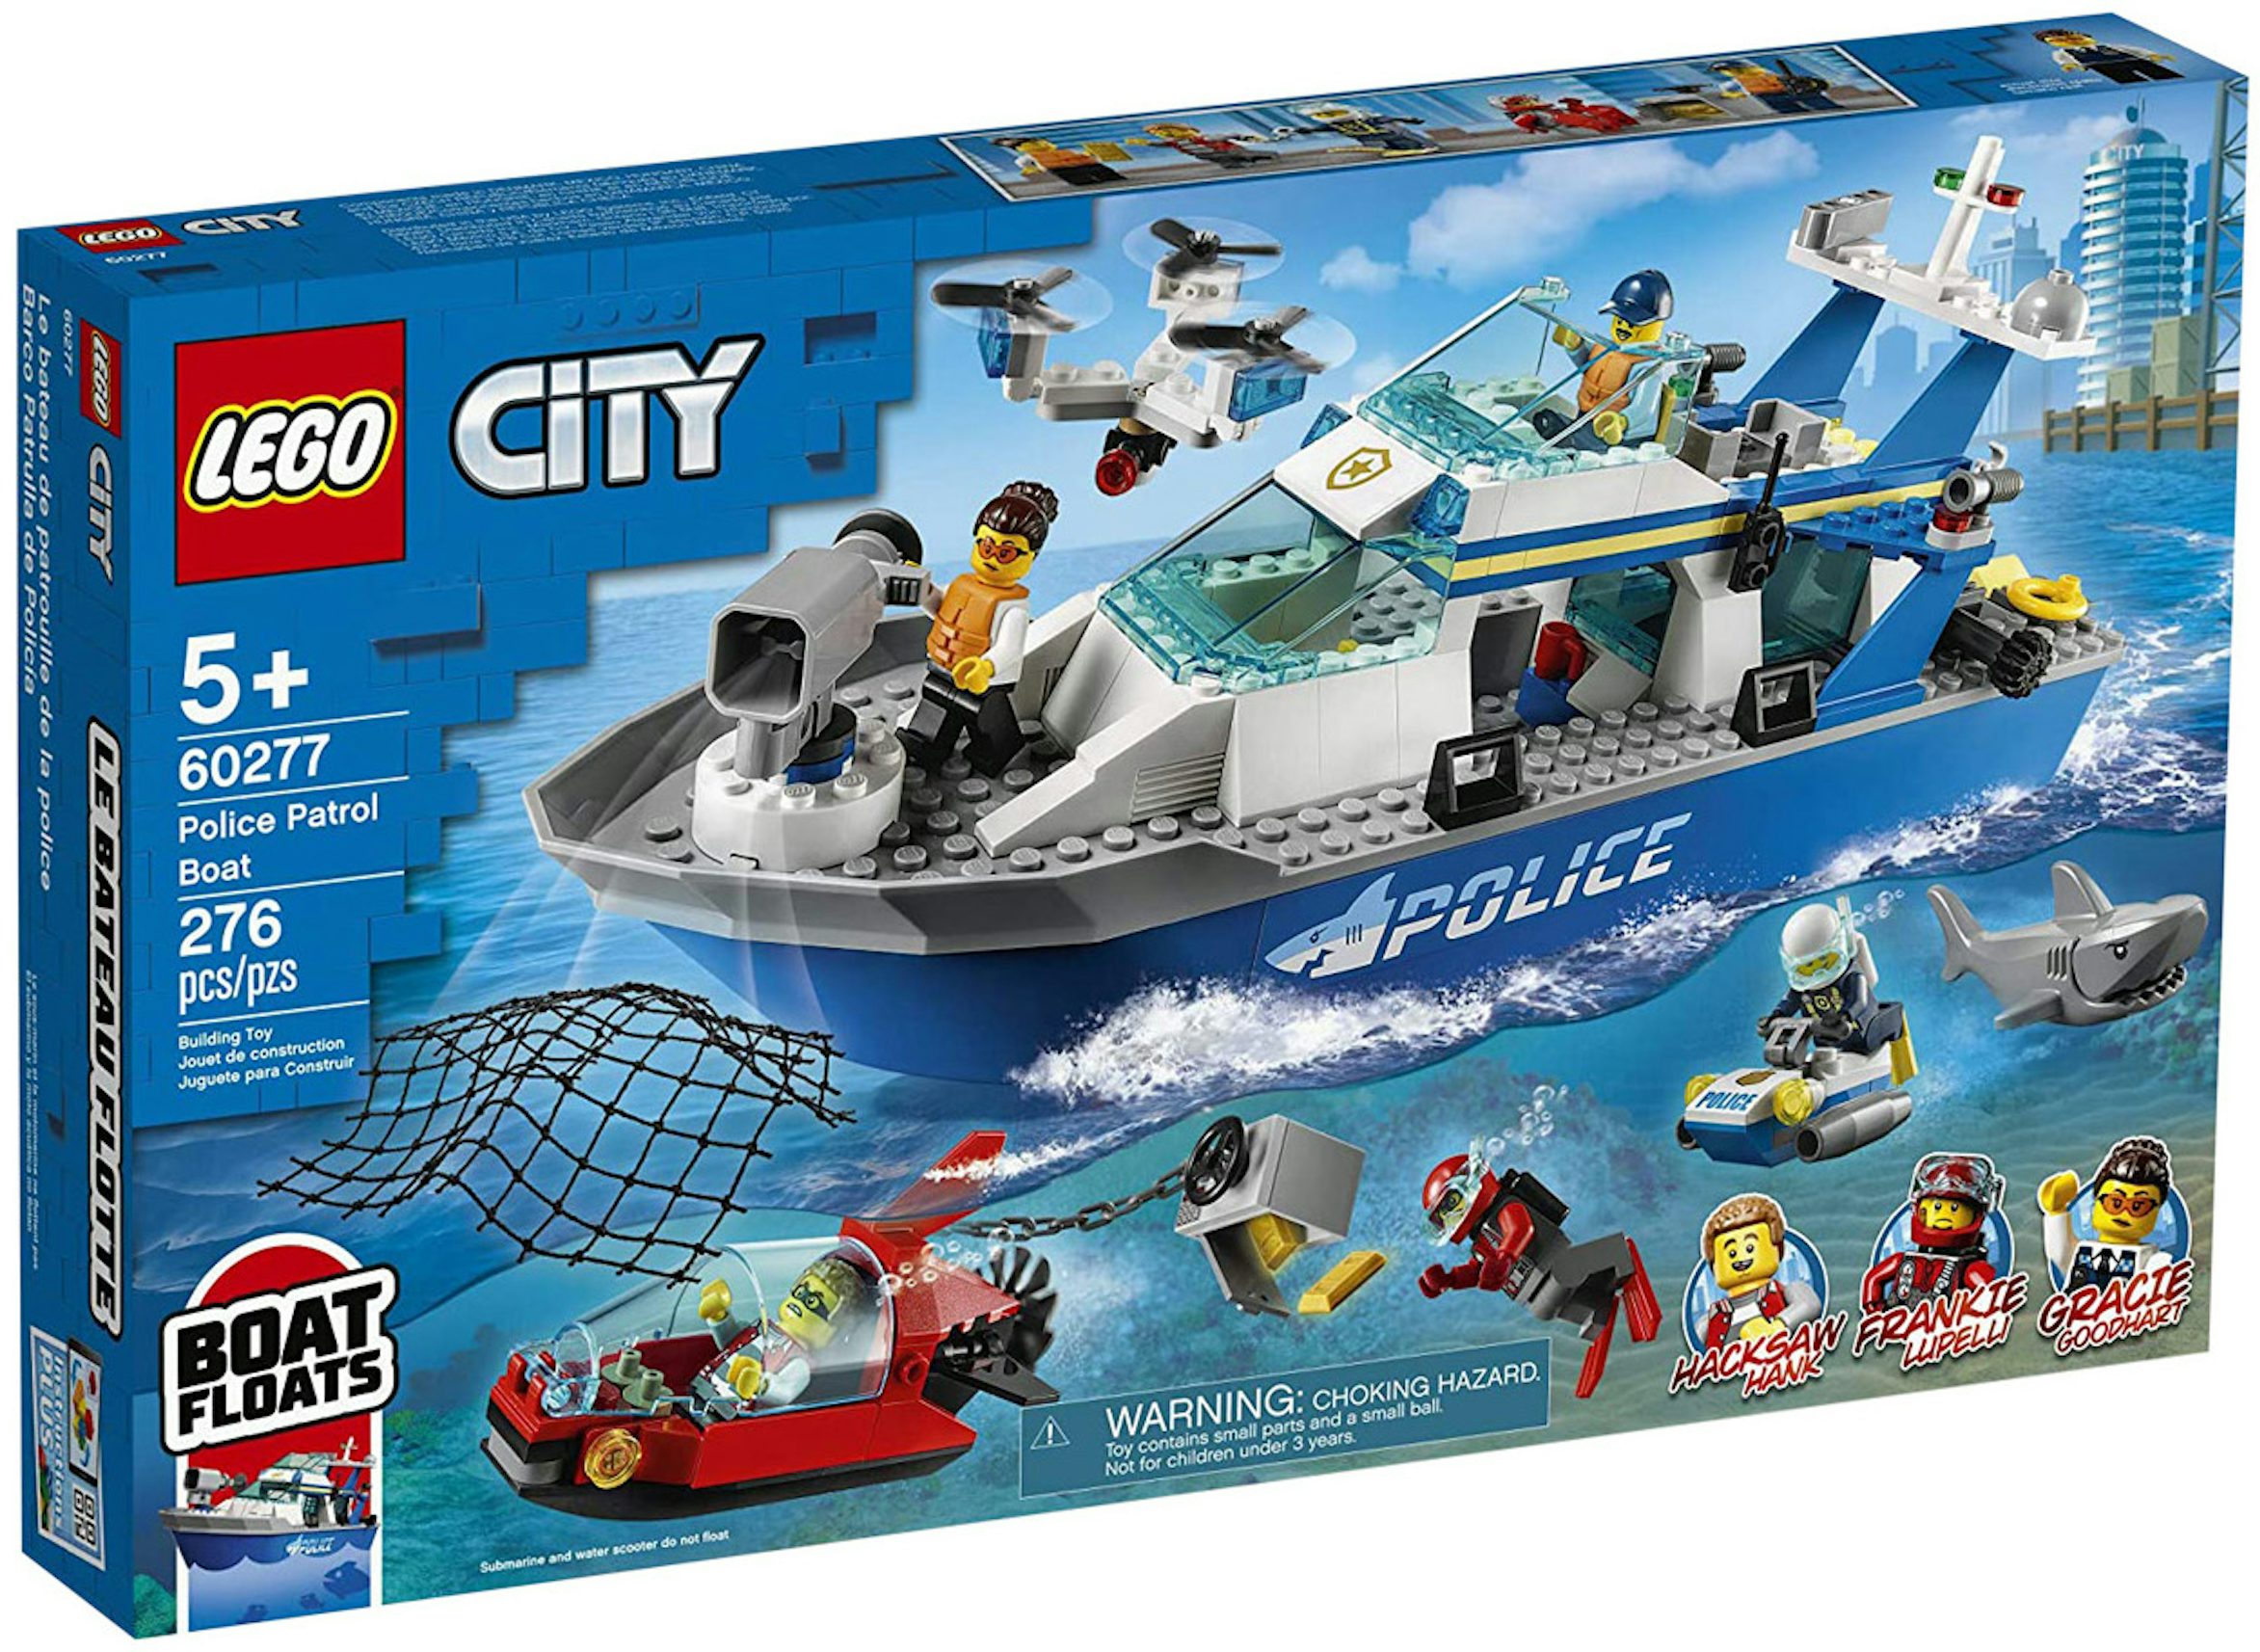 https://images.stockx.com/images/LEGO-City-Police-Patrol-Boat-Set-60277-V2.jpg?fit=fill&bg=FFFFFF&w=1200&h=857&fm=jpg&auto=compress&dpr=2&trim=color&updated_at=1647031513&q=60